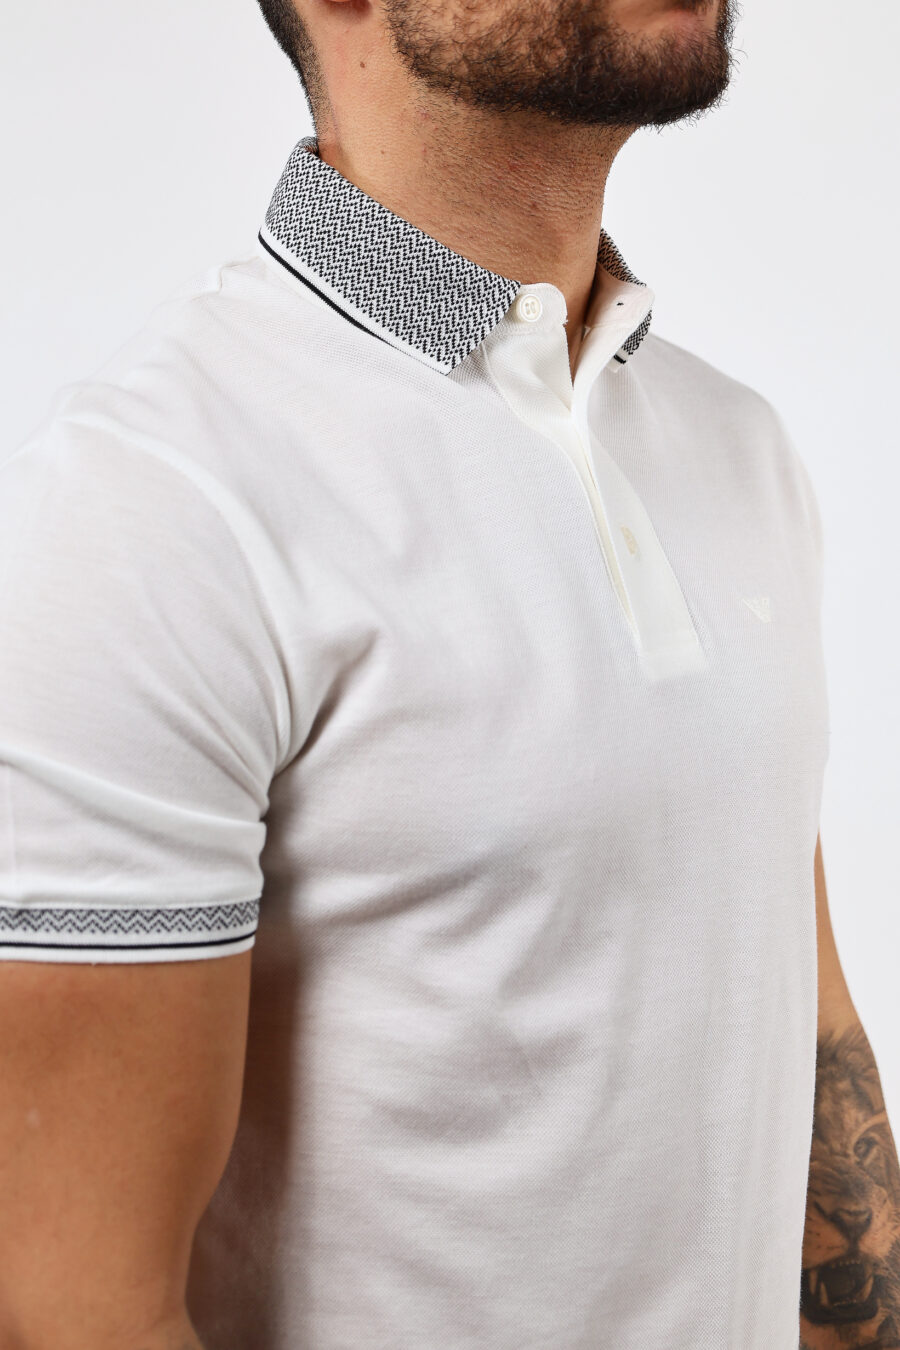 Weißes Poloshirt mit klassischem grauem Kragen - BLS Fashion 43